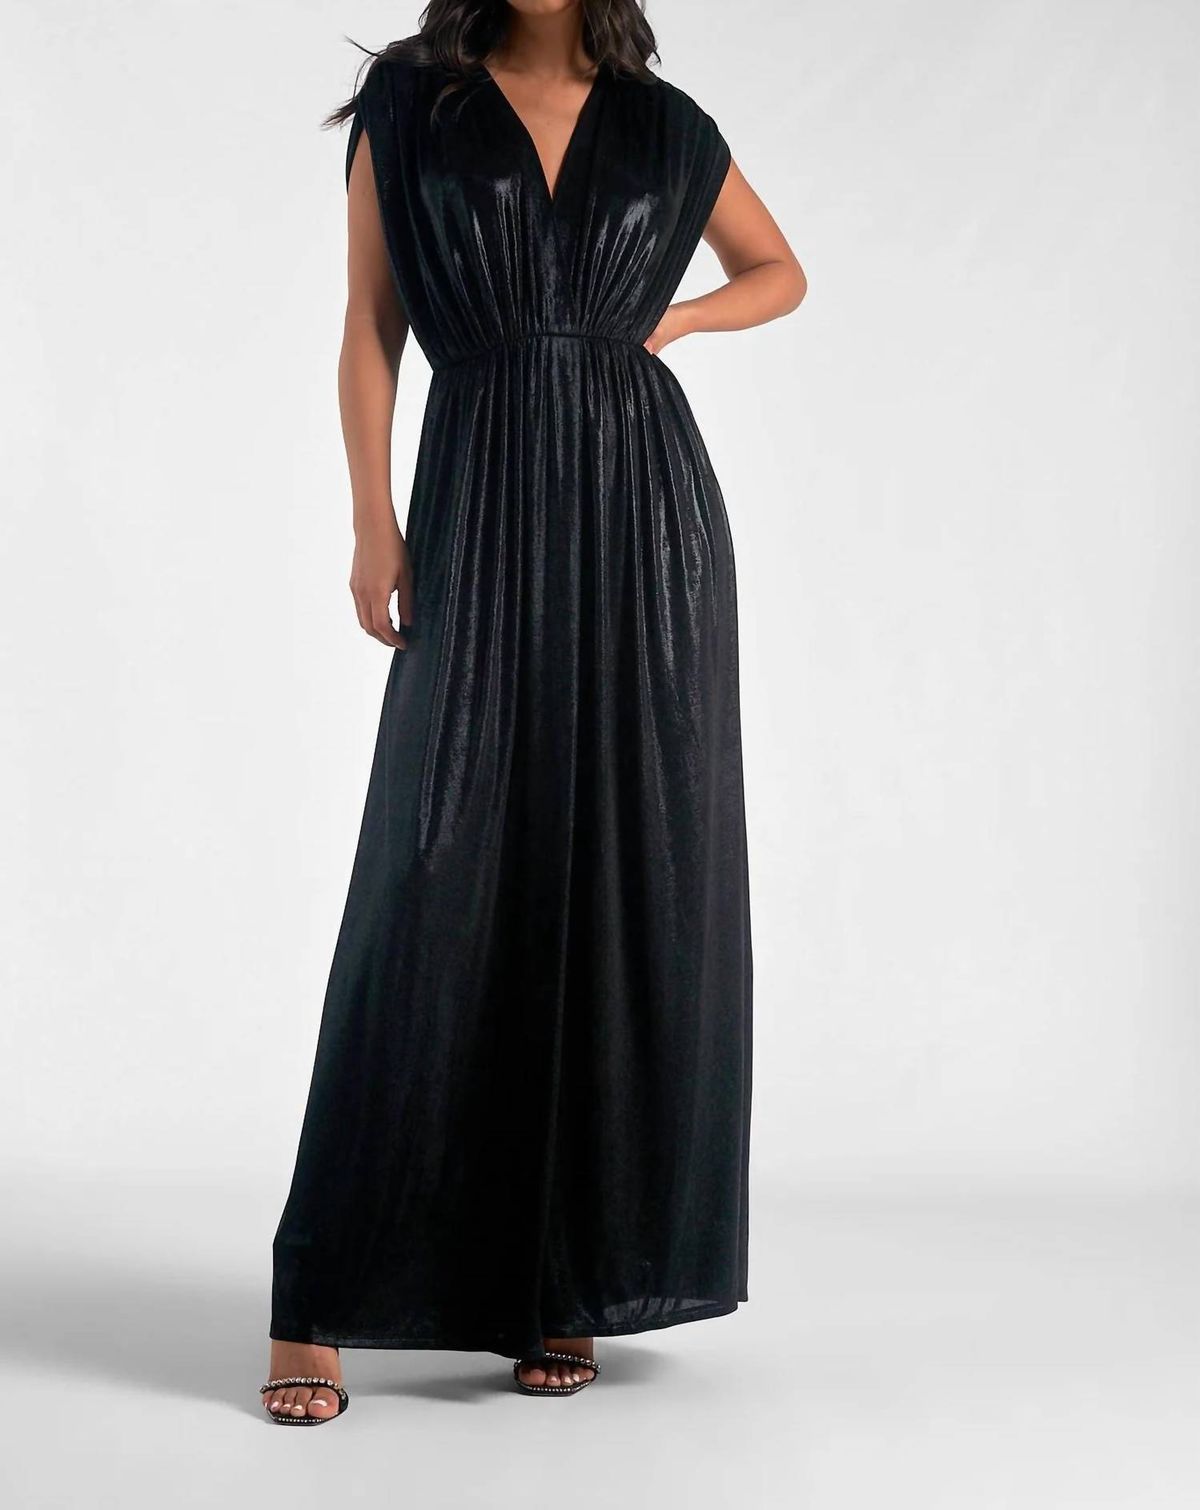 Style 1-1904002267-2696 ELAN Size L Black Side Slit Dress on Queenly